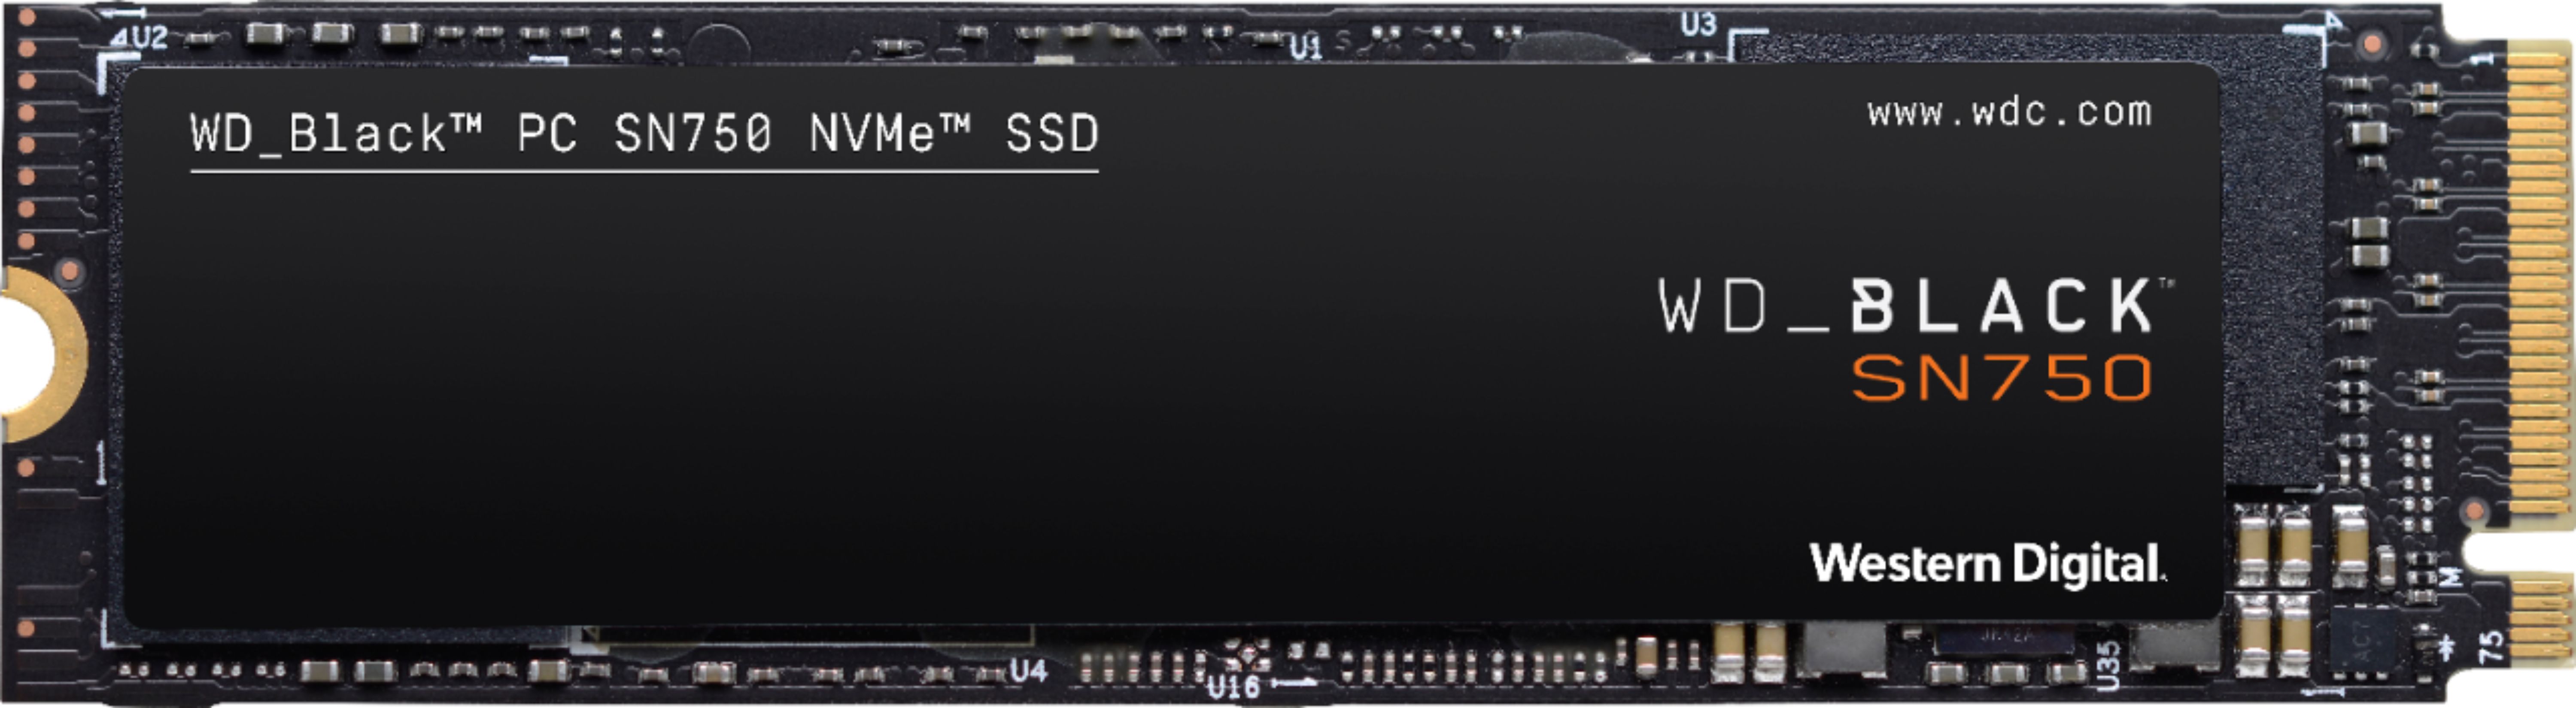 WD BLACK 500GB Gaming PCIe Gen 3 x4 WDBRPG5000ANC-WRSN - Best Buy